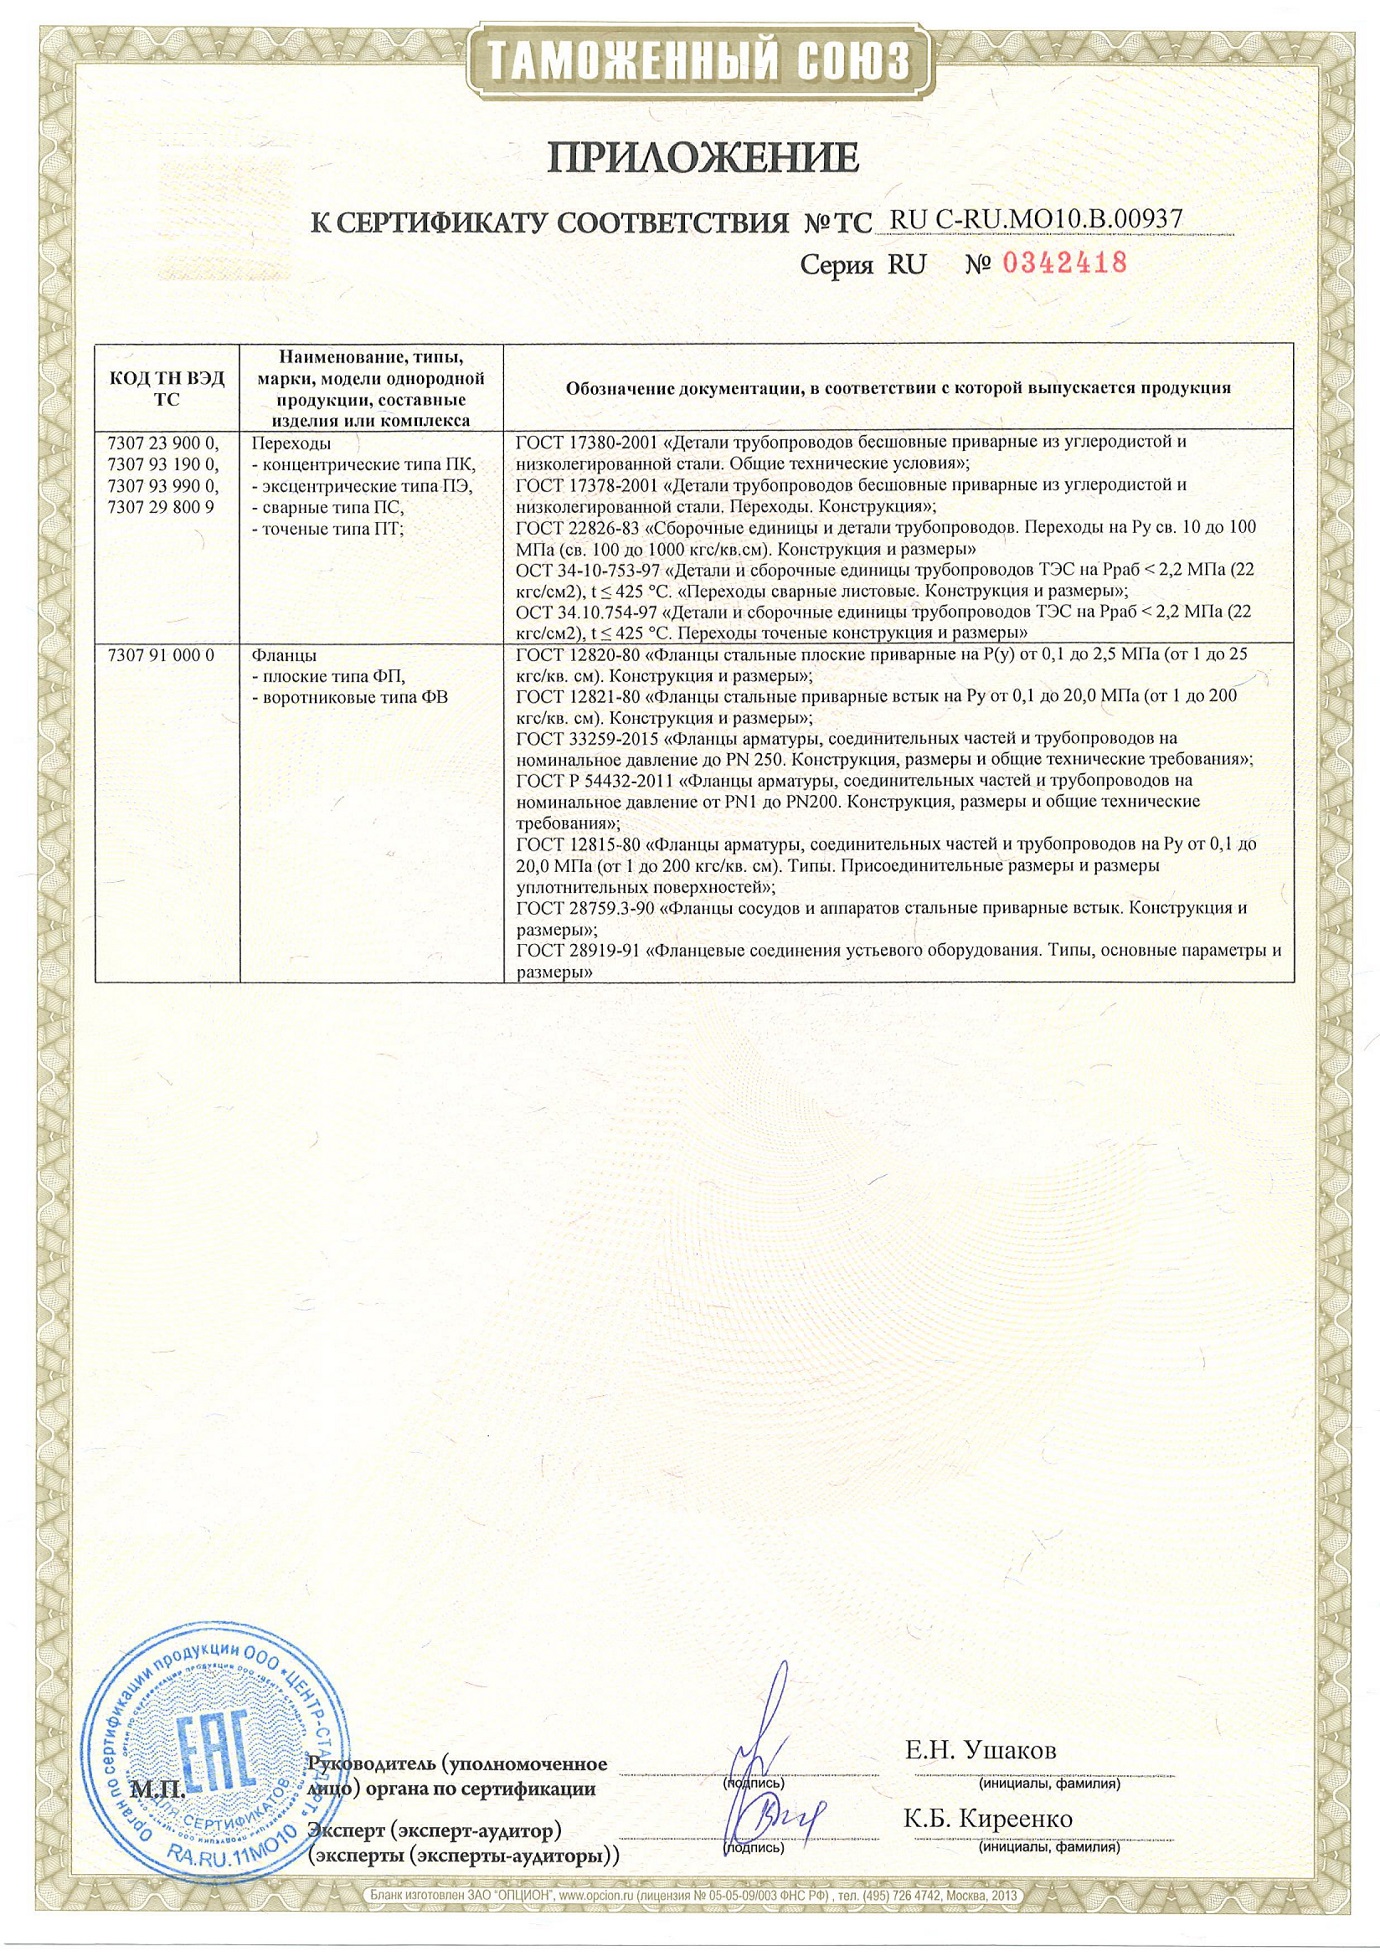 Приложение 2 к сертификату соответствия ТР ТС